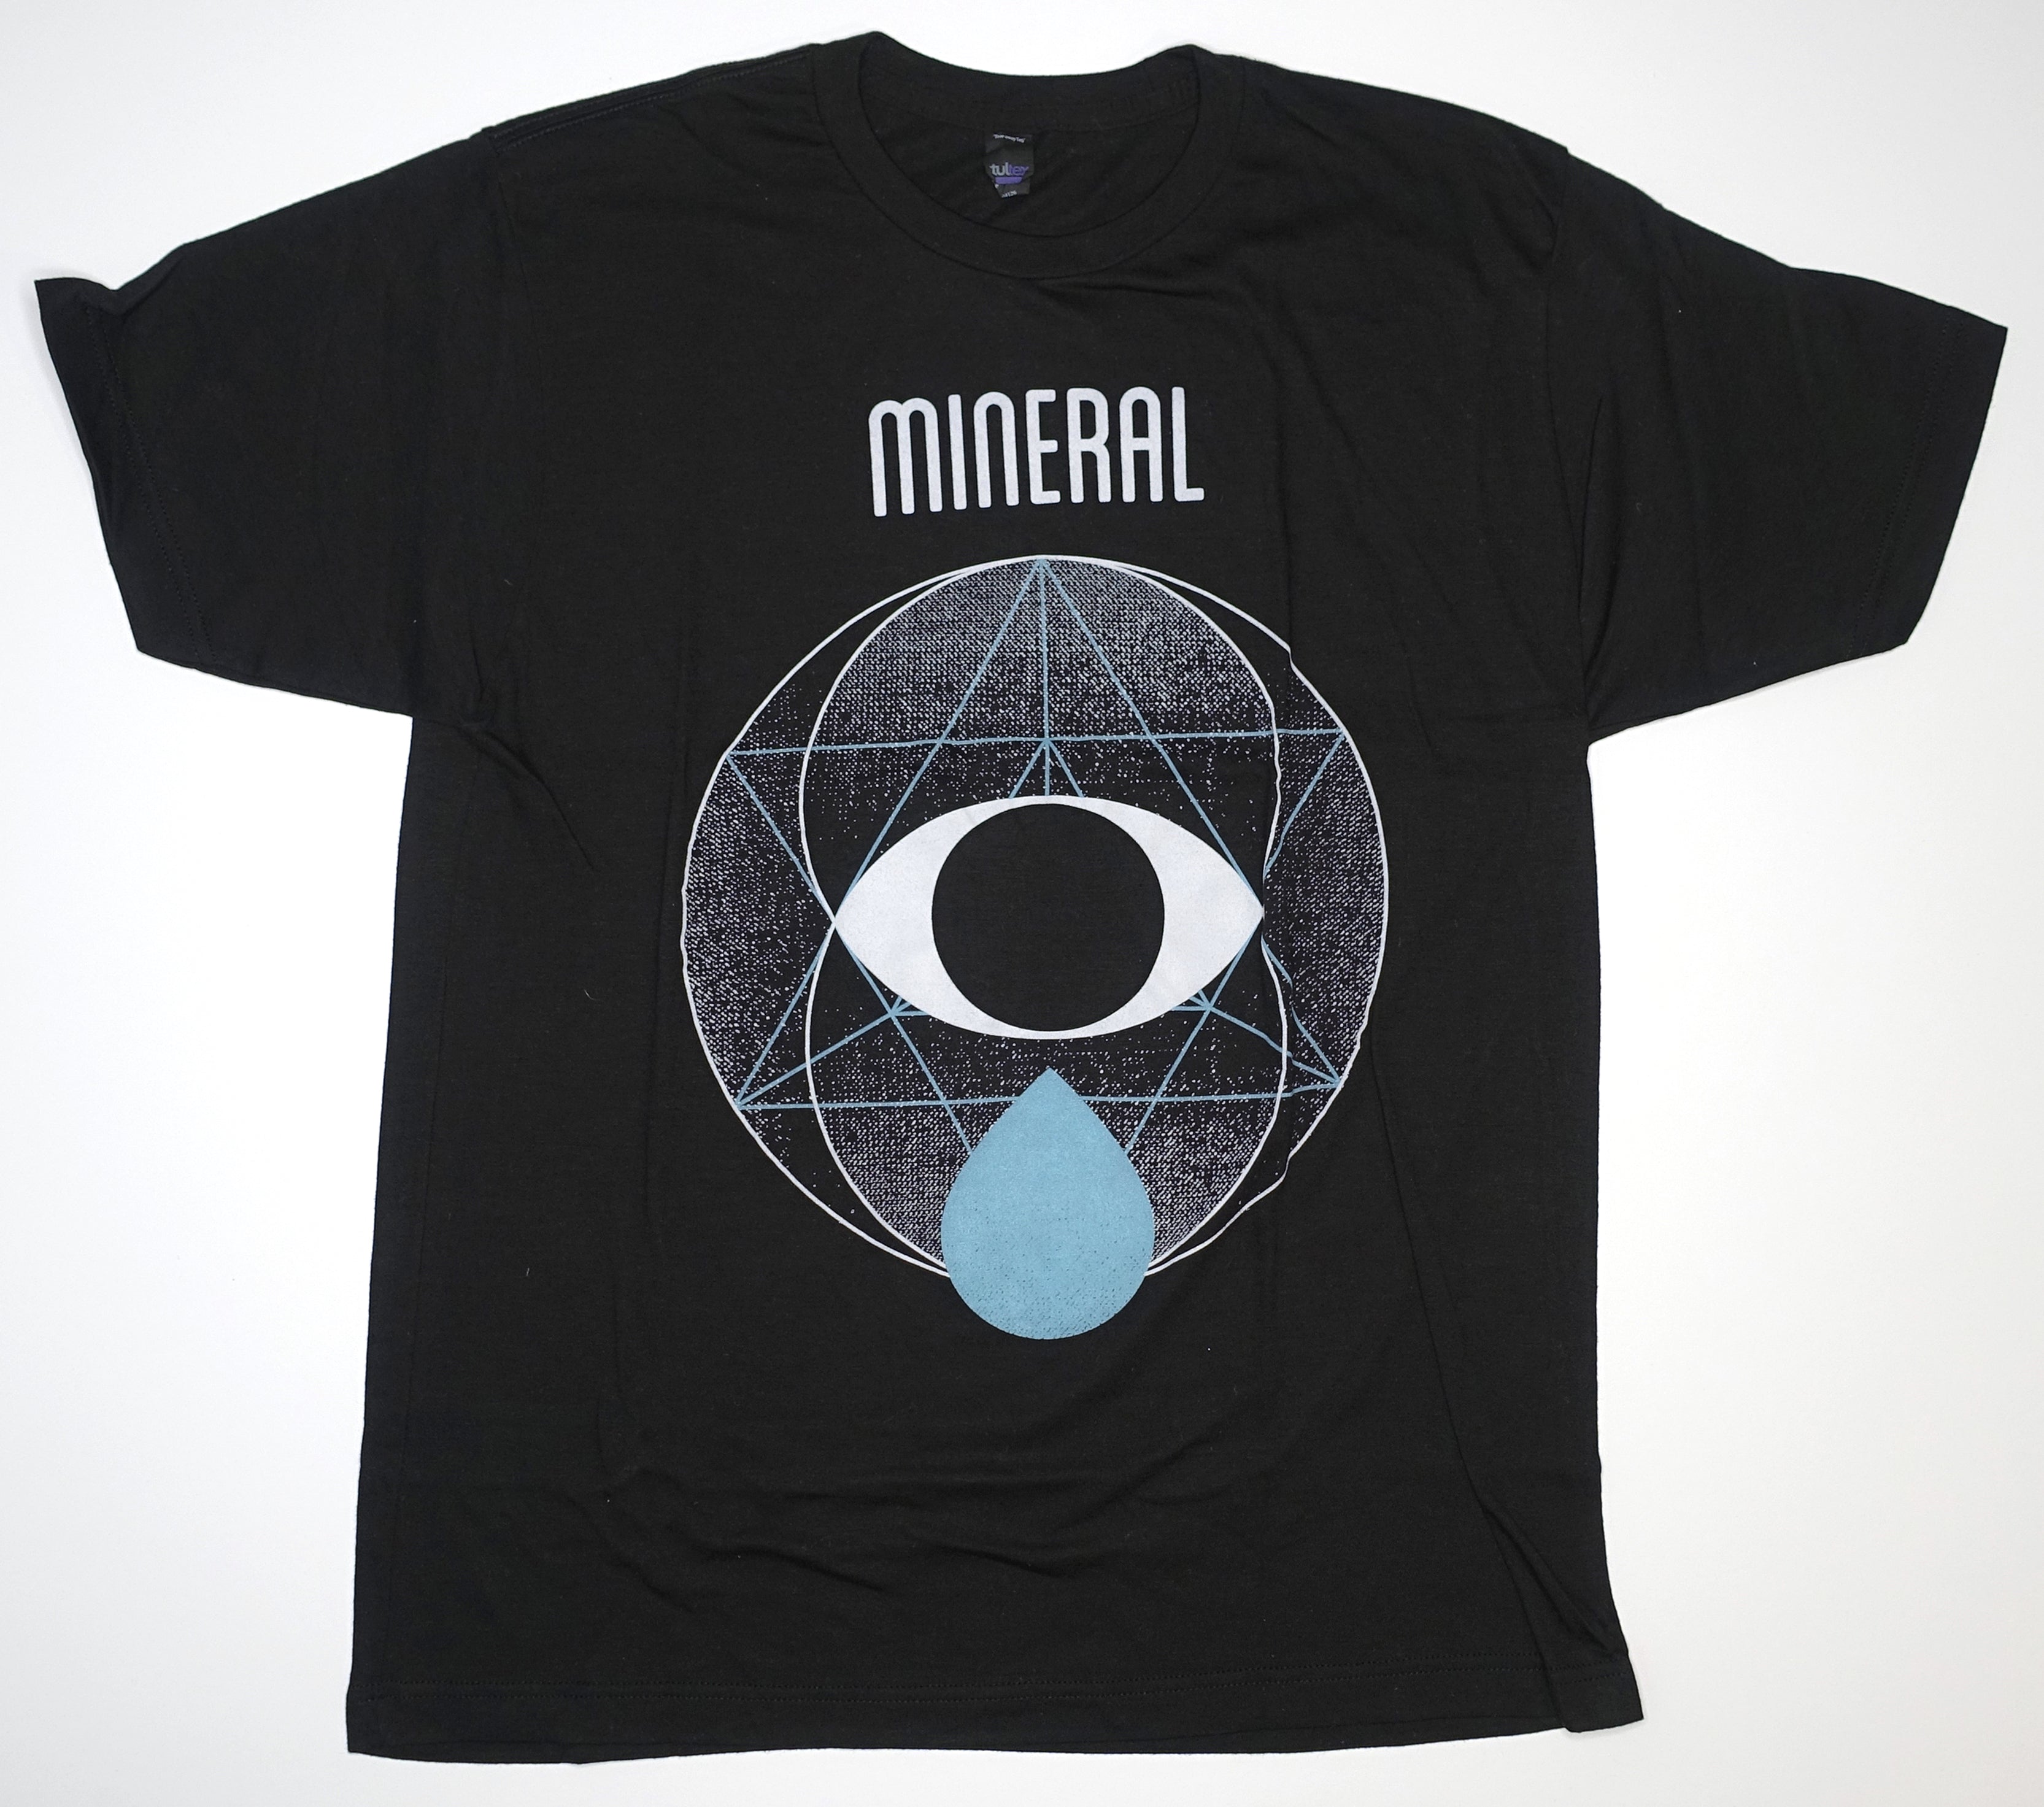 Mineral - Eye Tear Drop 2014 Tour Shirt Size Large